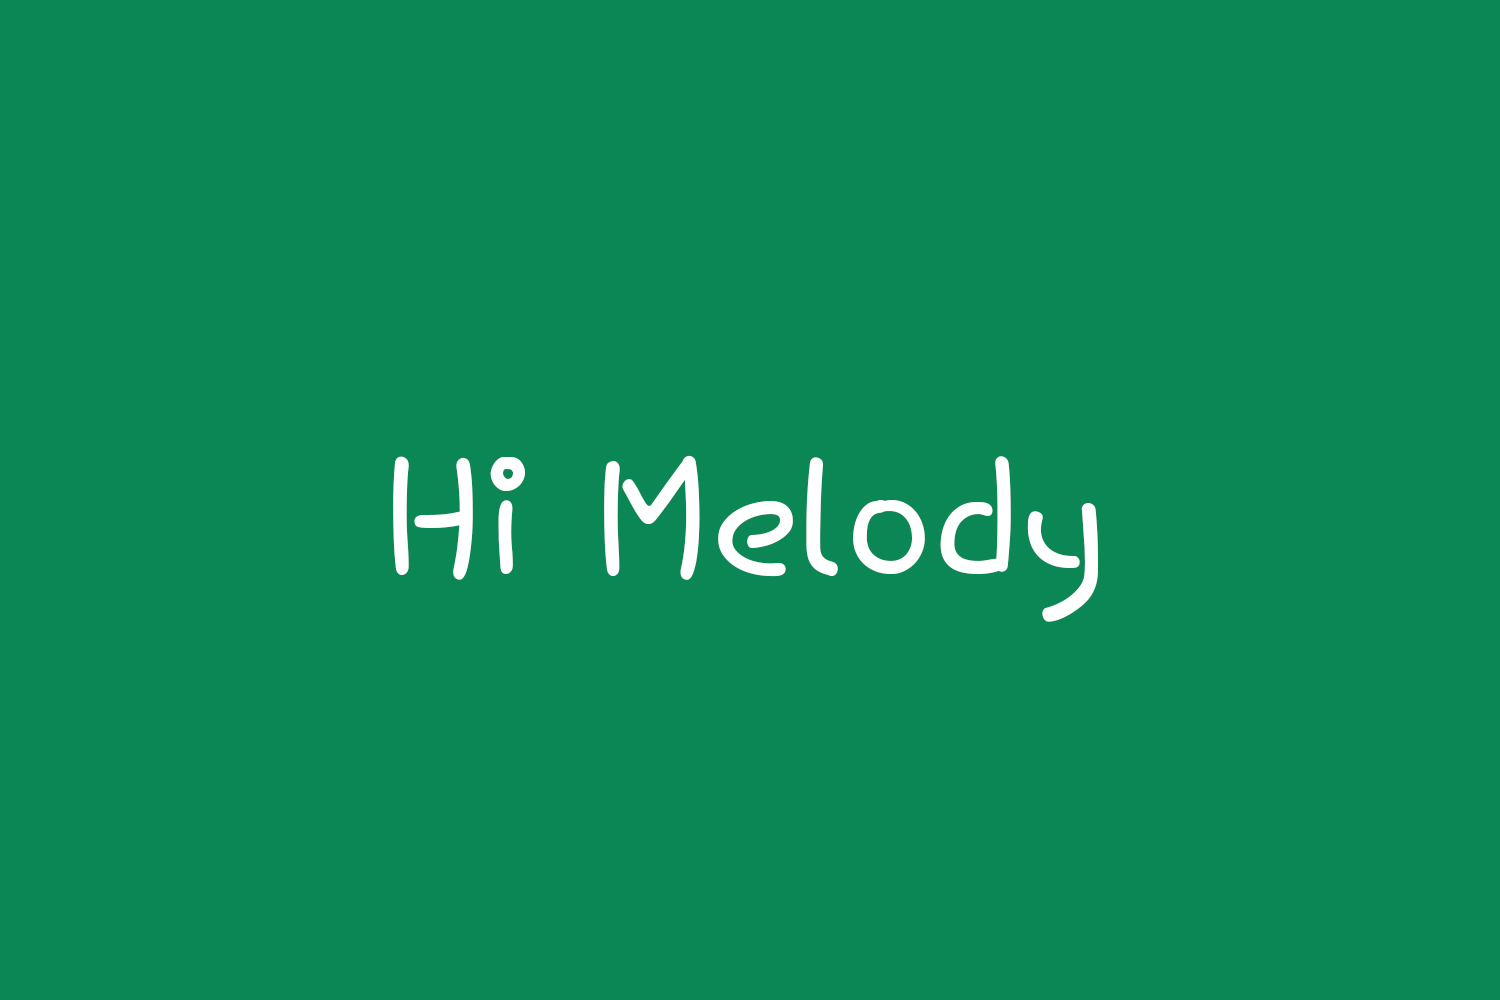 Hi Melody